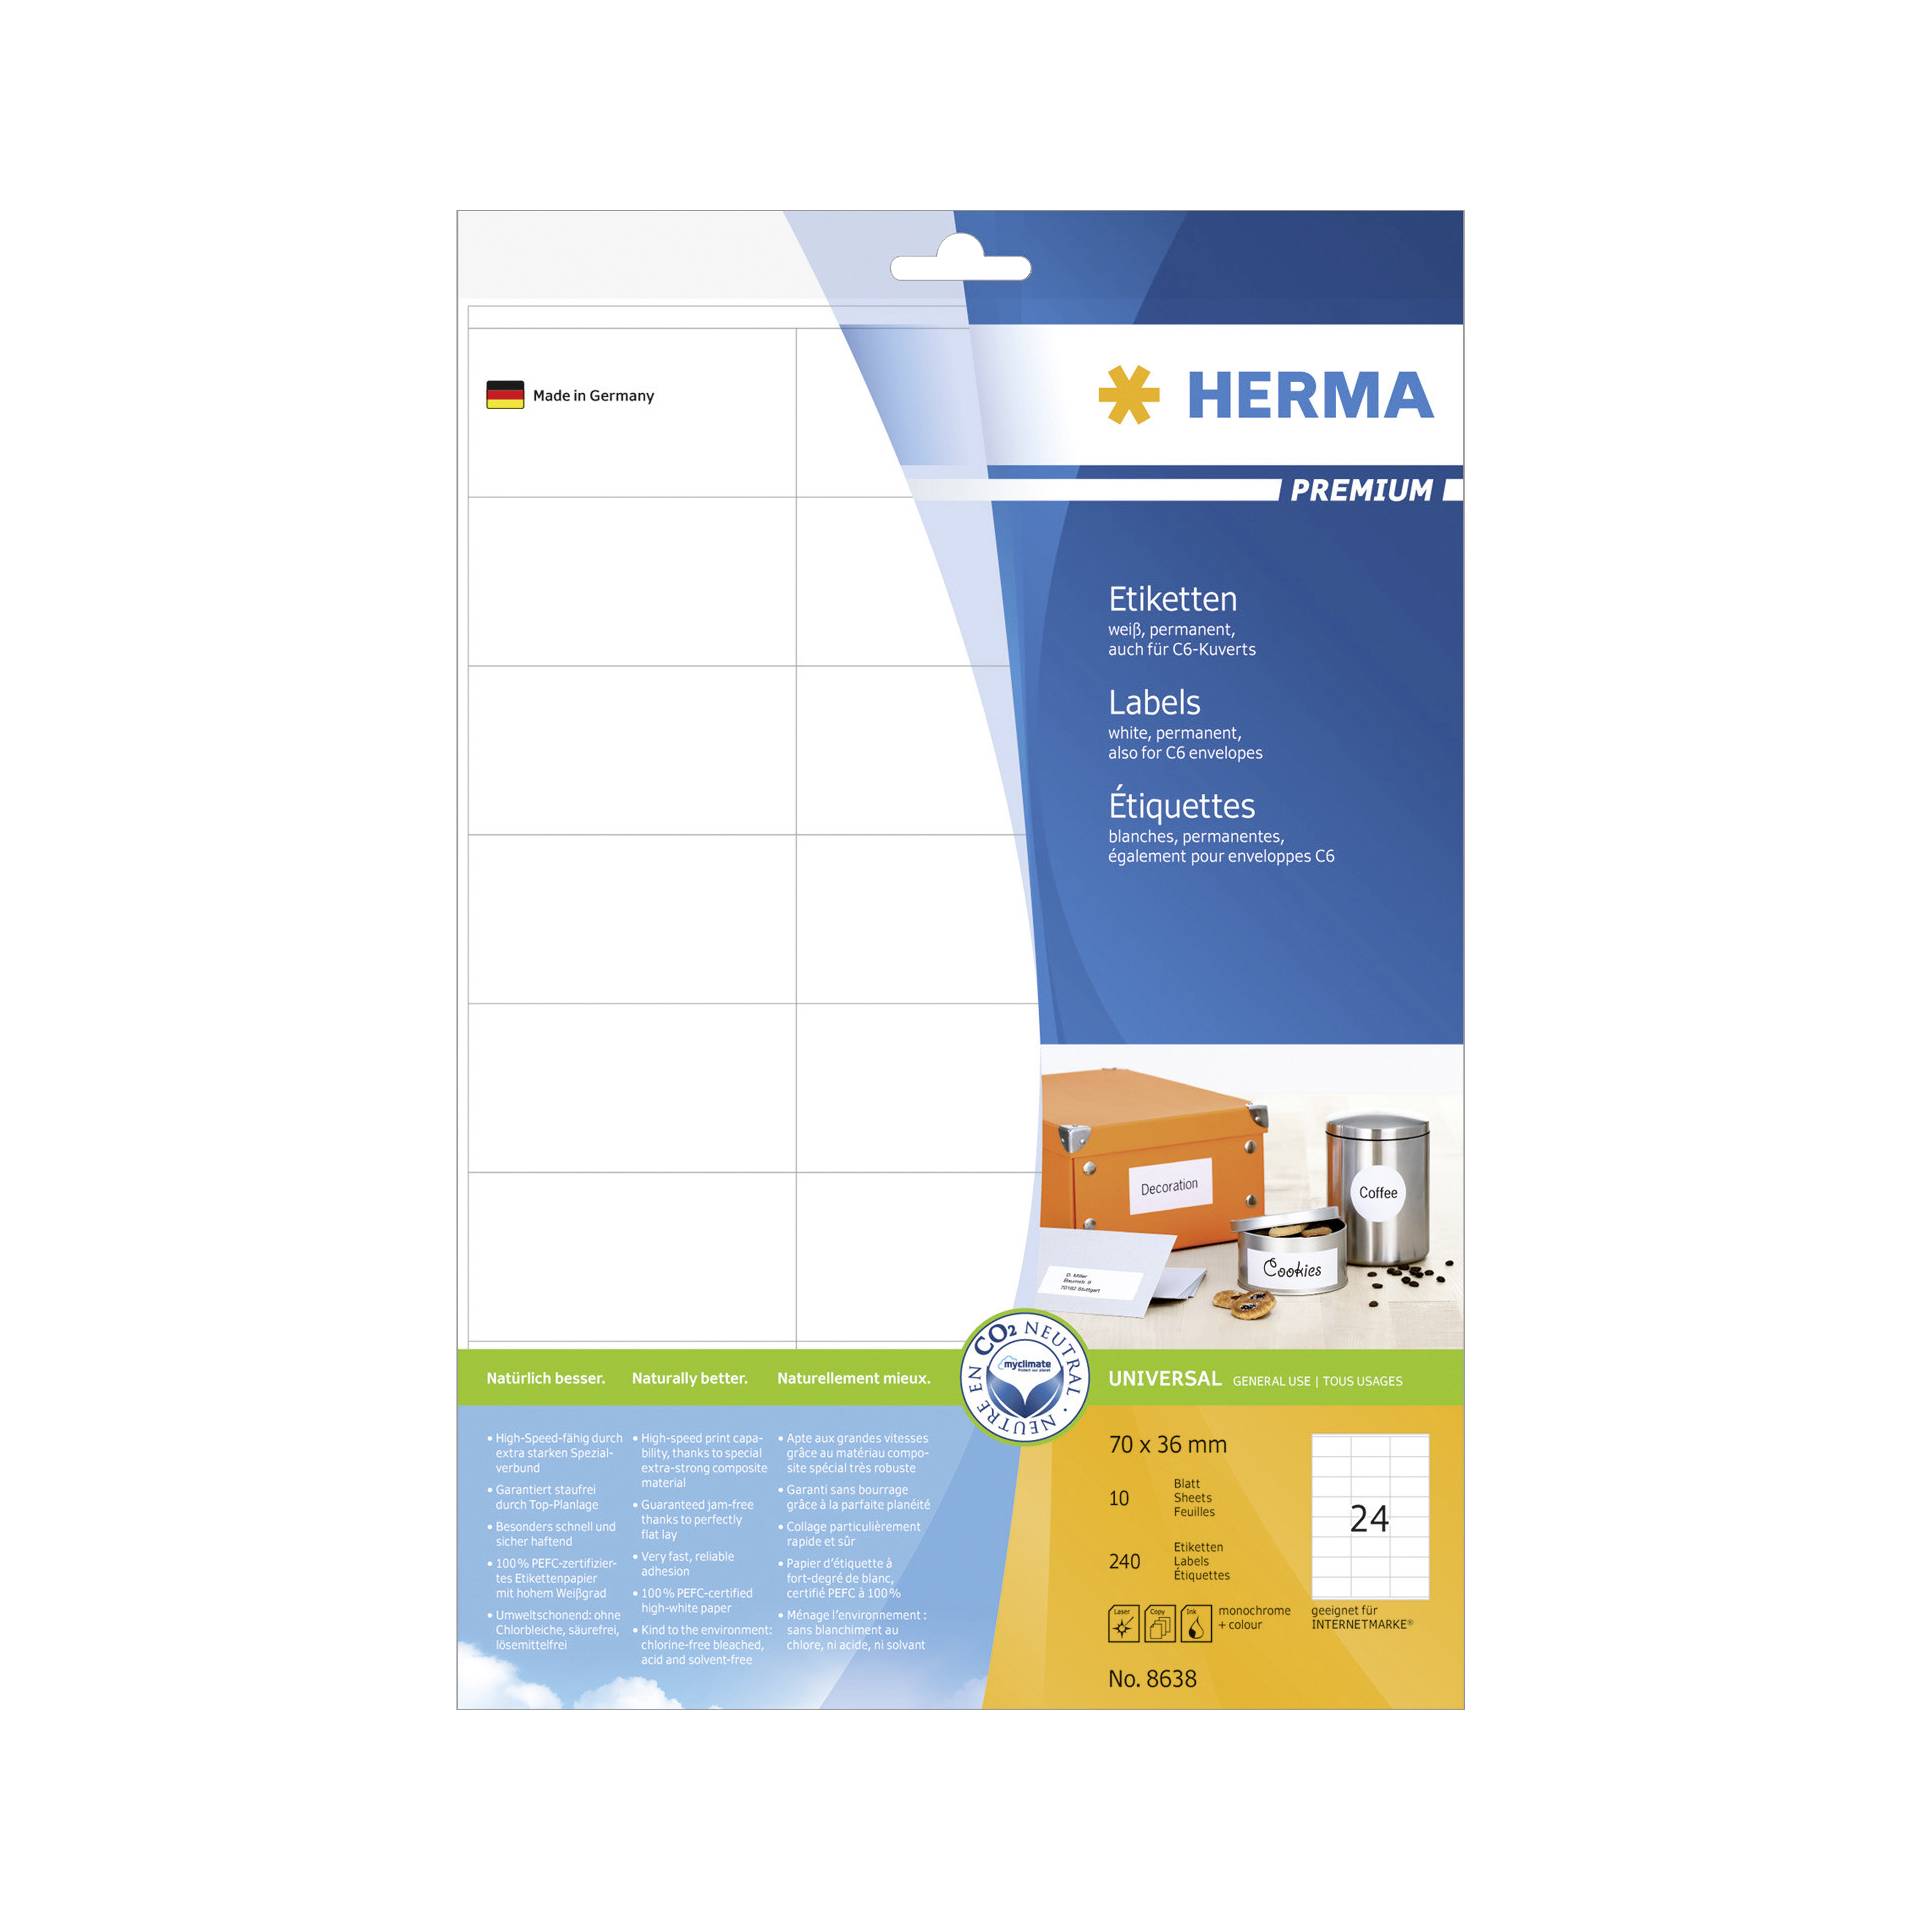 Herma etichette 70x36 bianco 10 fogli DIN A4 240 pezzi   863